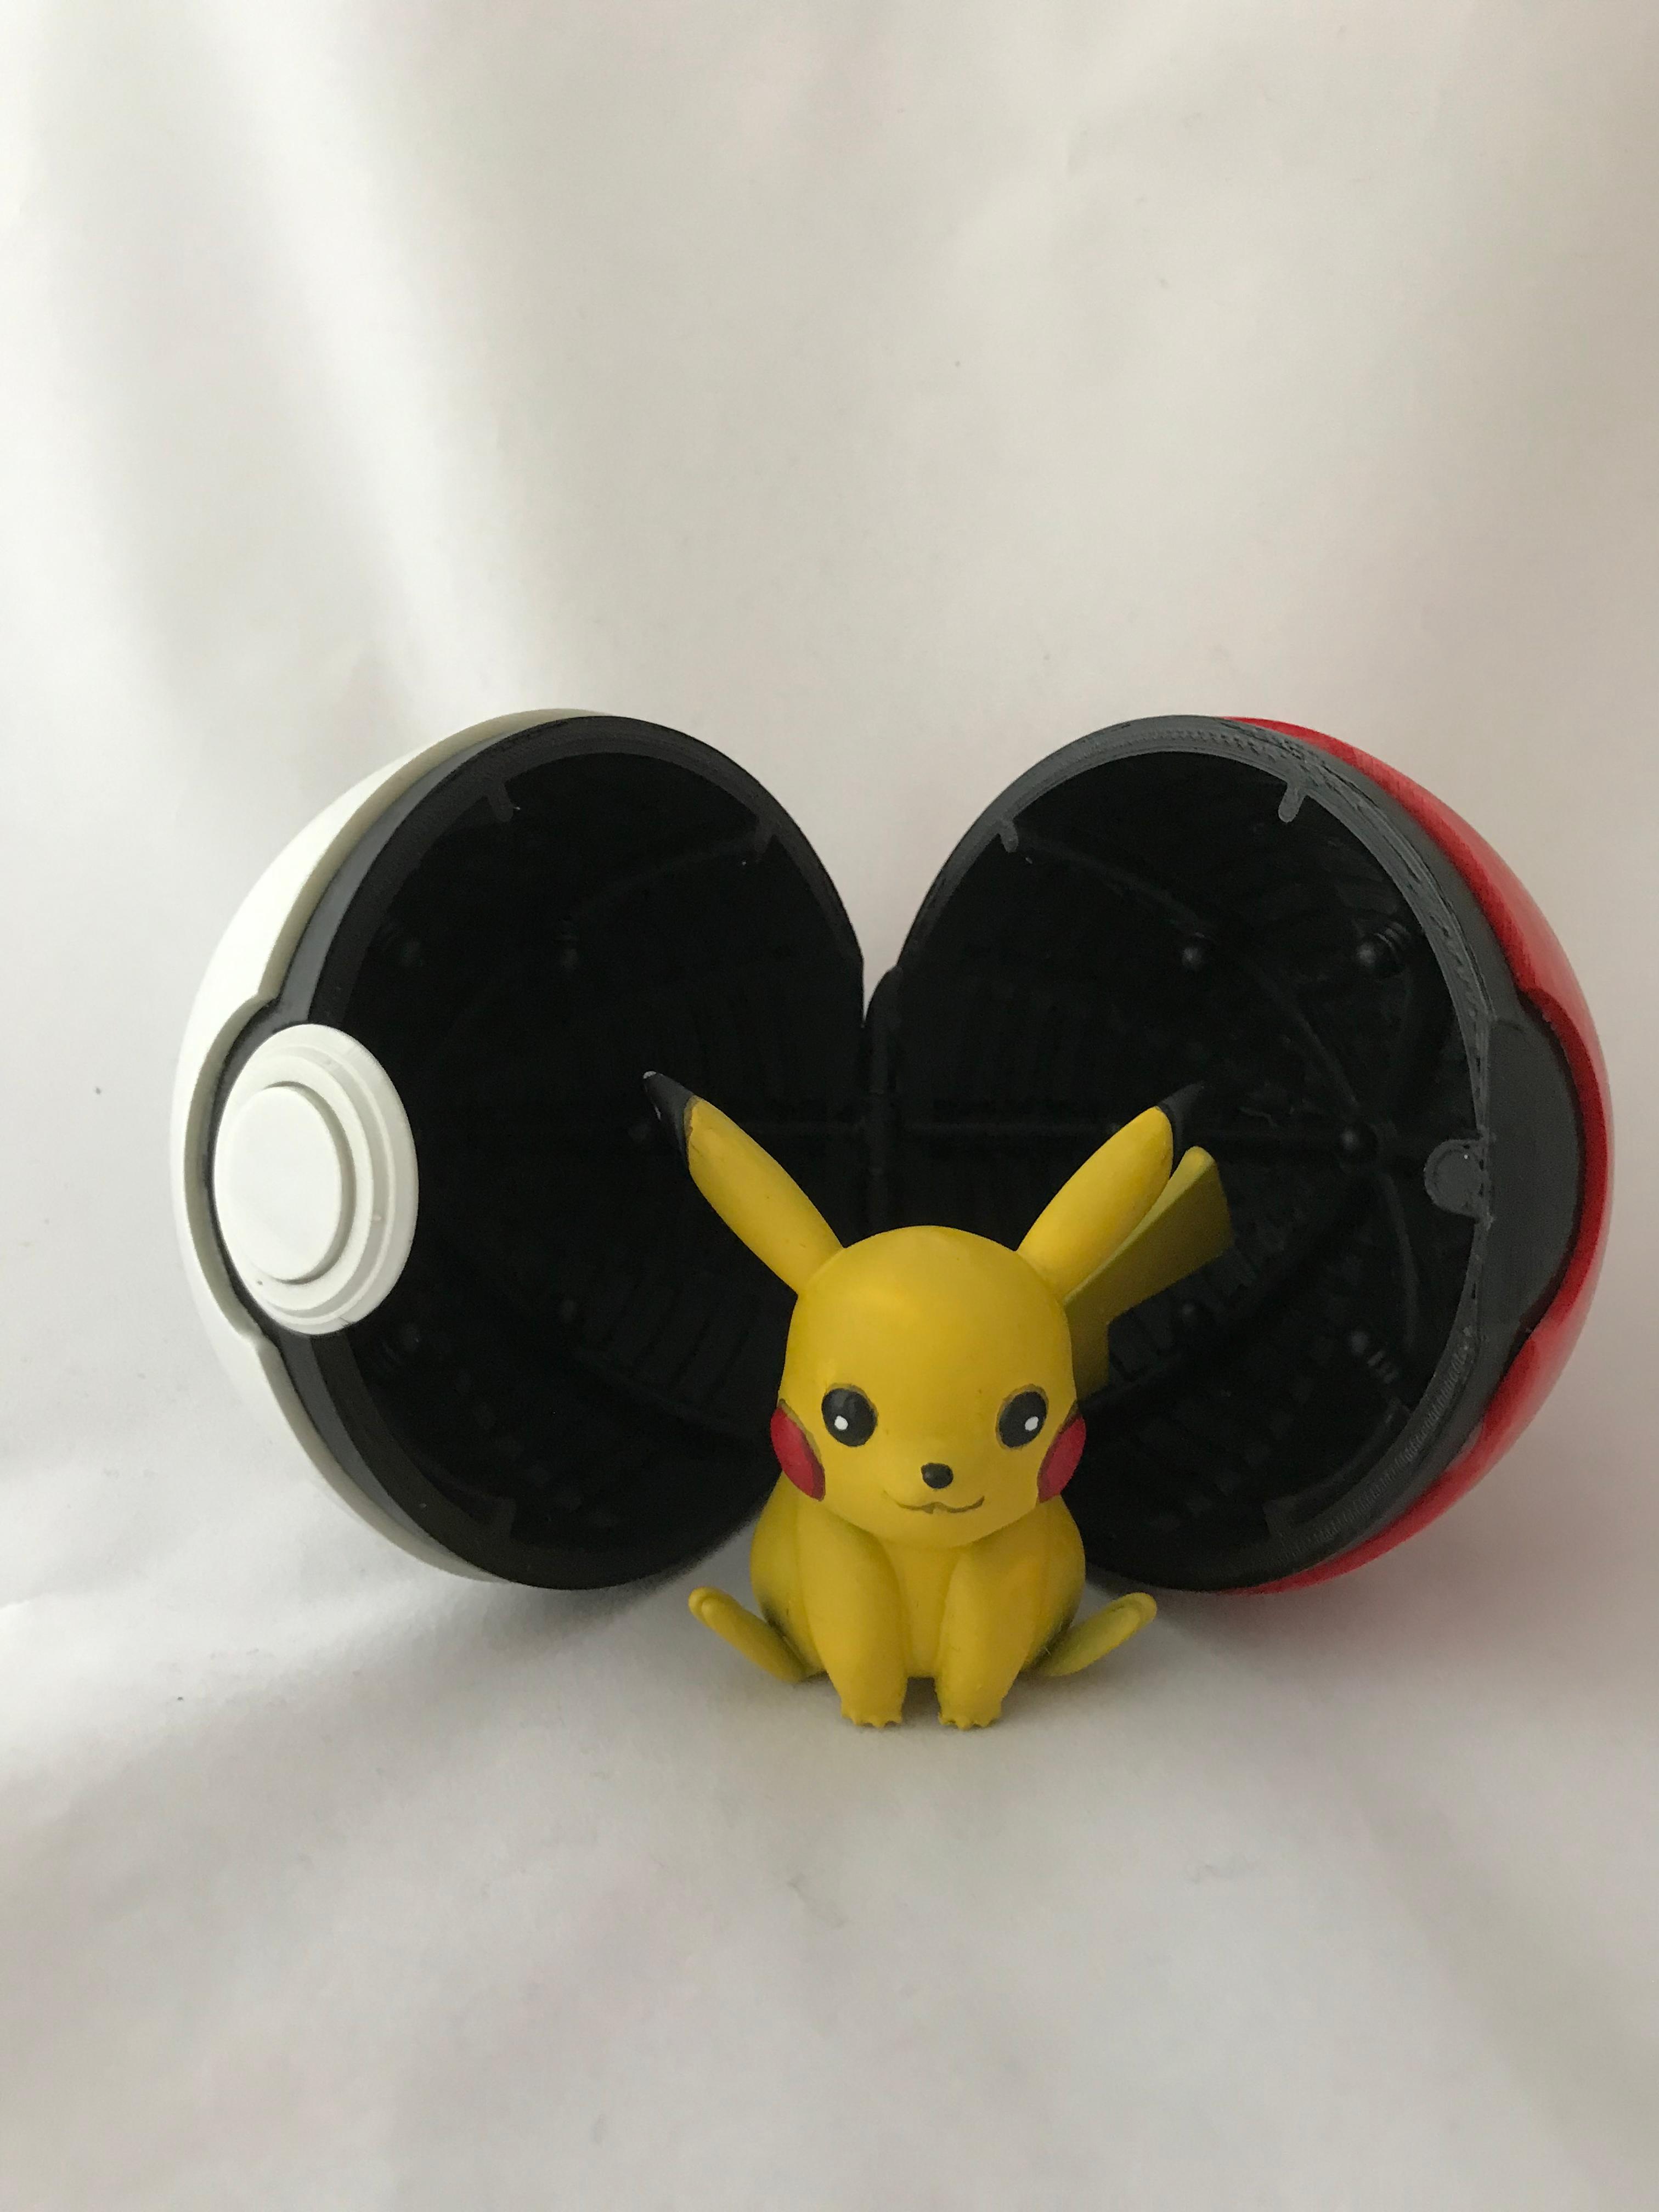 Pikachu - Pokemon - Fan Art - Great model! Thanks for creating it. - 3d model